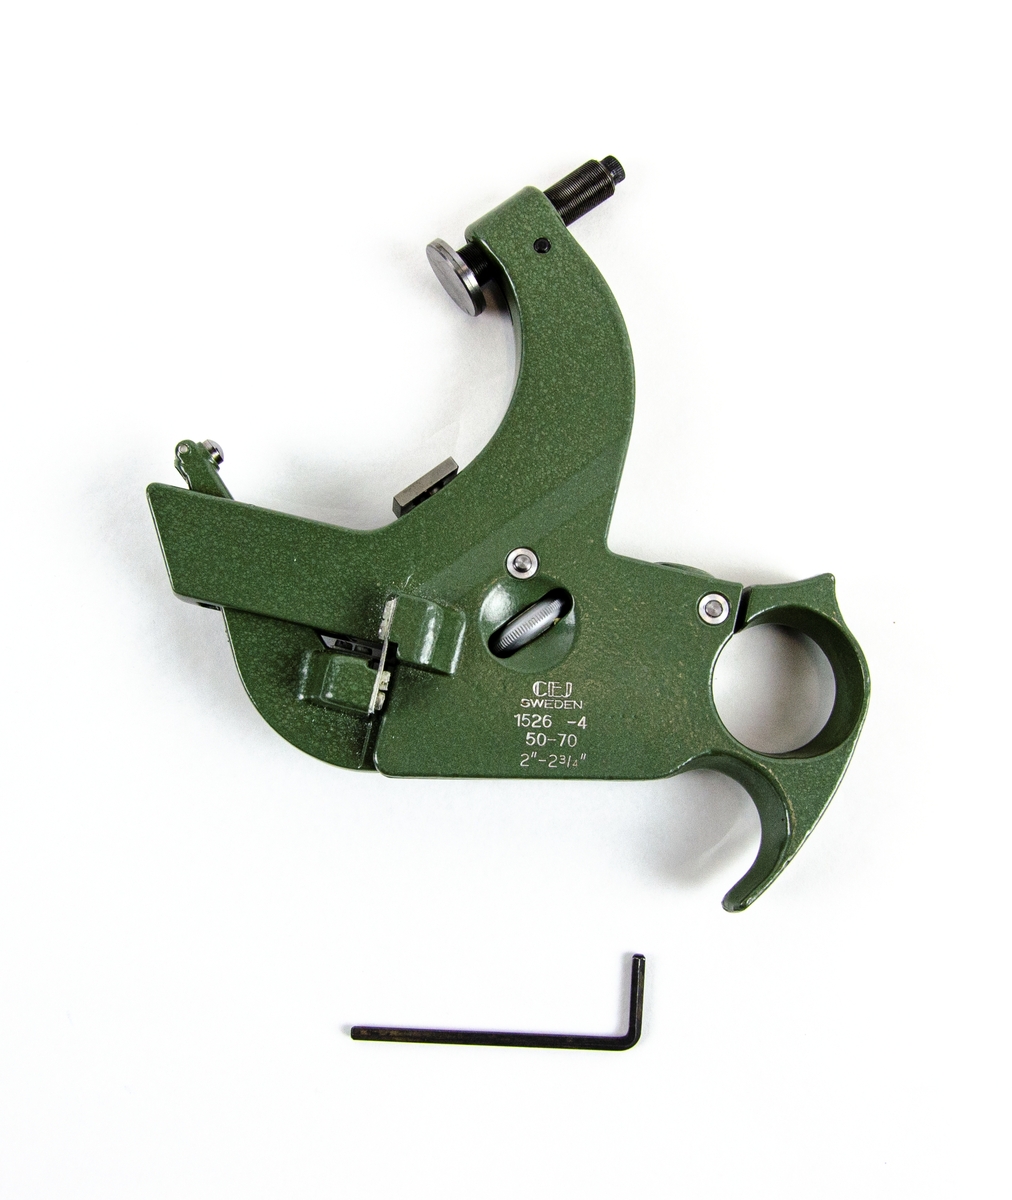 Mätbygel 1526-4
Grön mätbygel i metall tillverkad av C.E. Johansson i blå kartonglåda. Bygeln skall användas i samband med ett visarinstrument t.ex. en Mikrokator. En insexnyckel för justering av verktyget ingår i lådan.